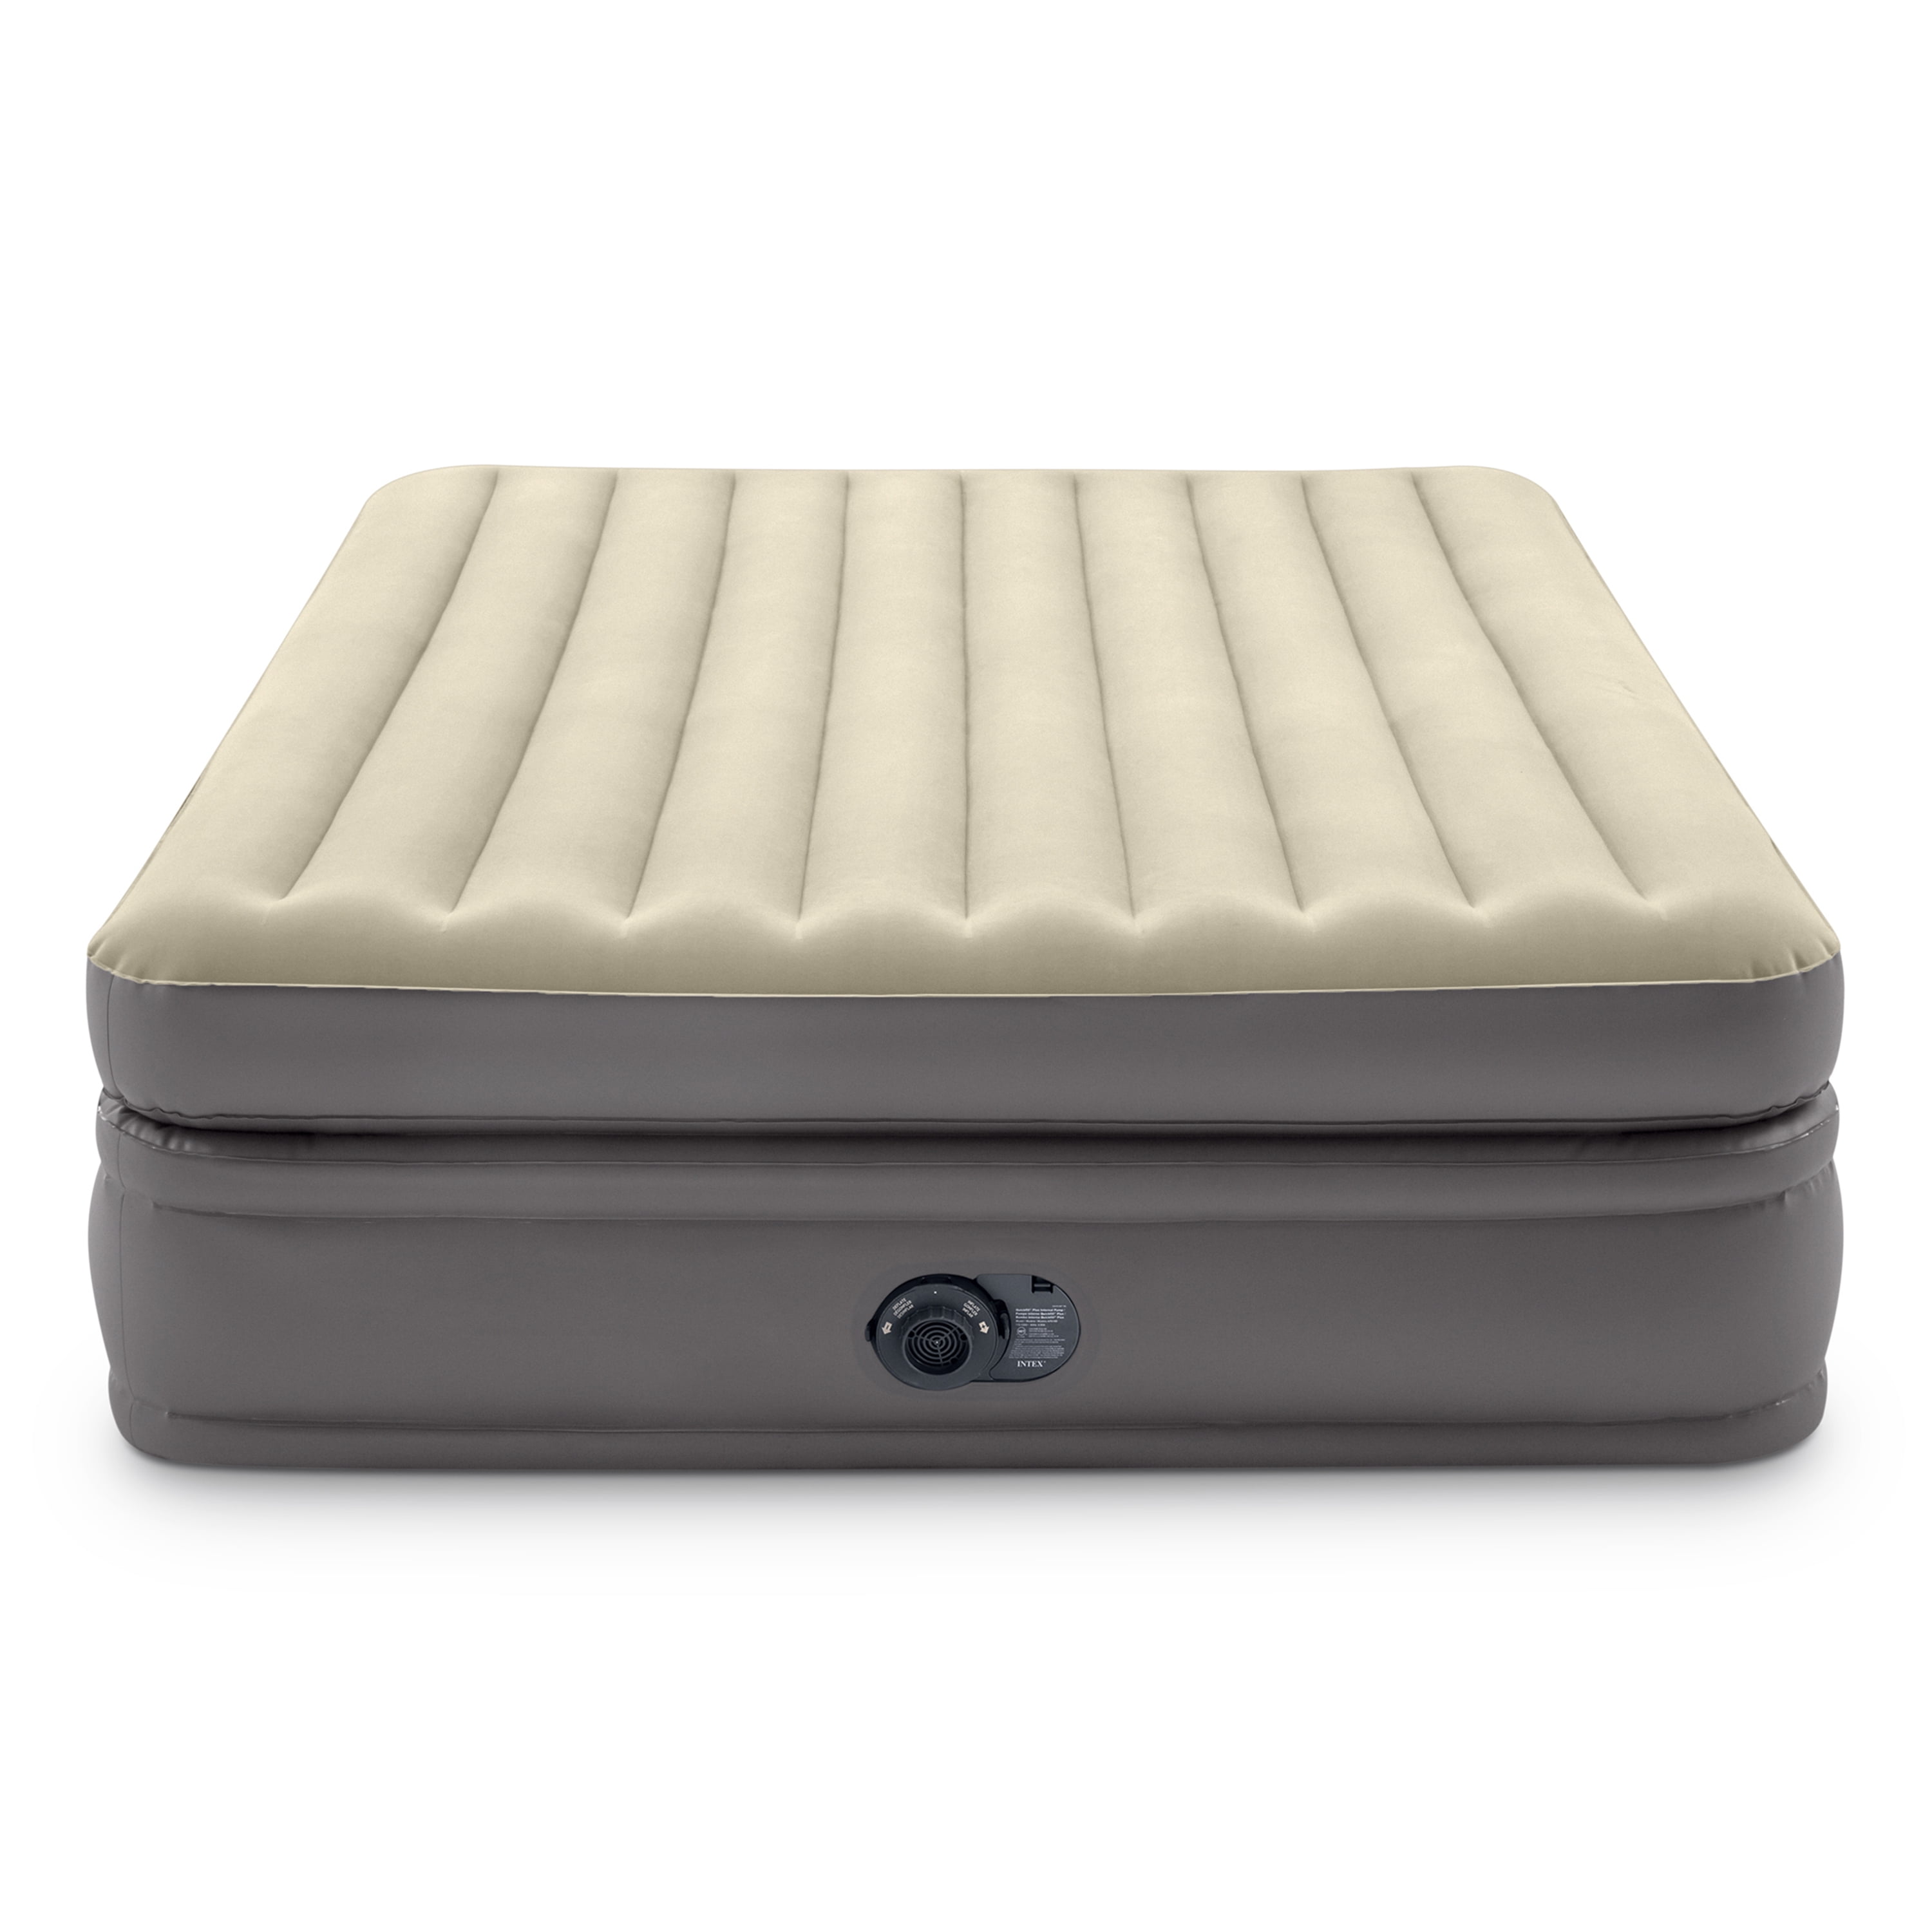 Intex Raised Comfort Pillowtop 20 Queen Air Mattress With Built In Pump :  Target